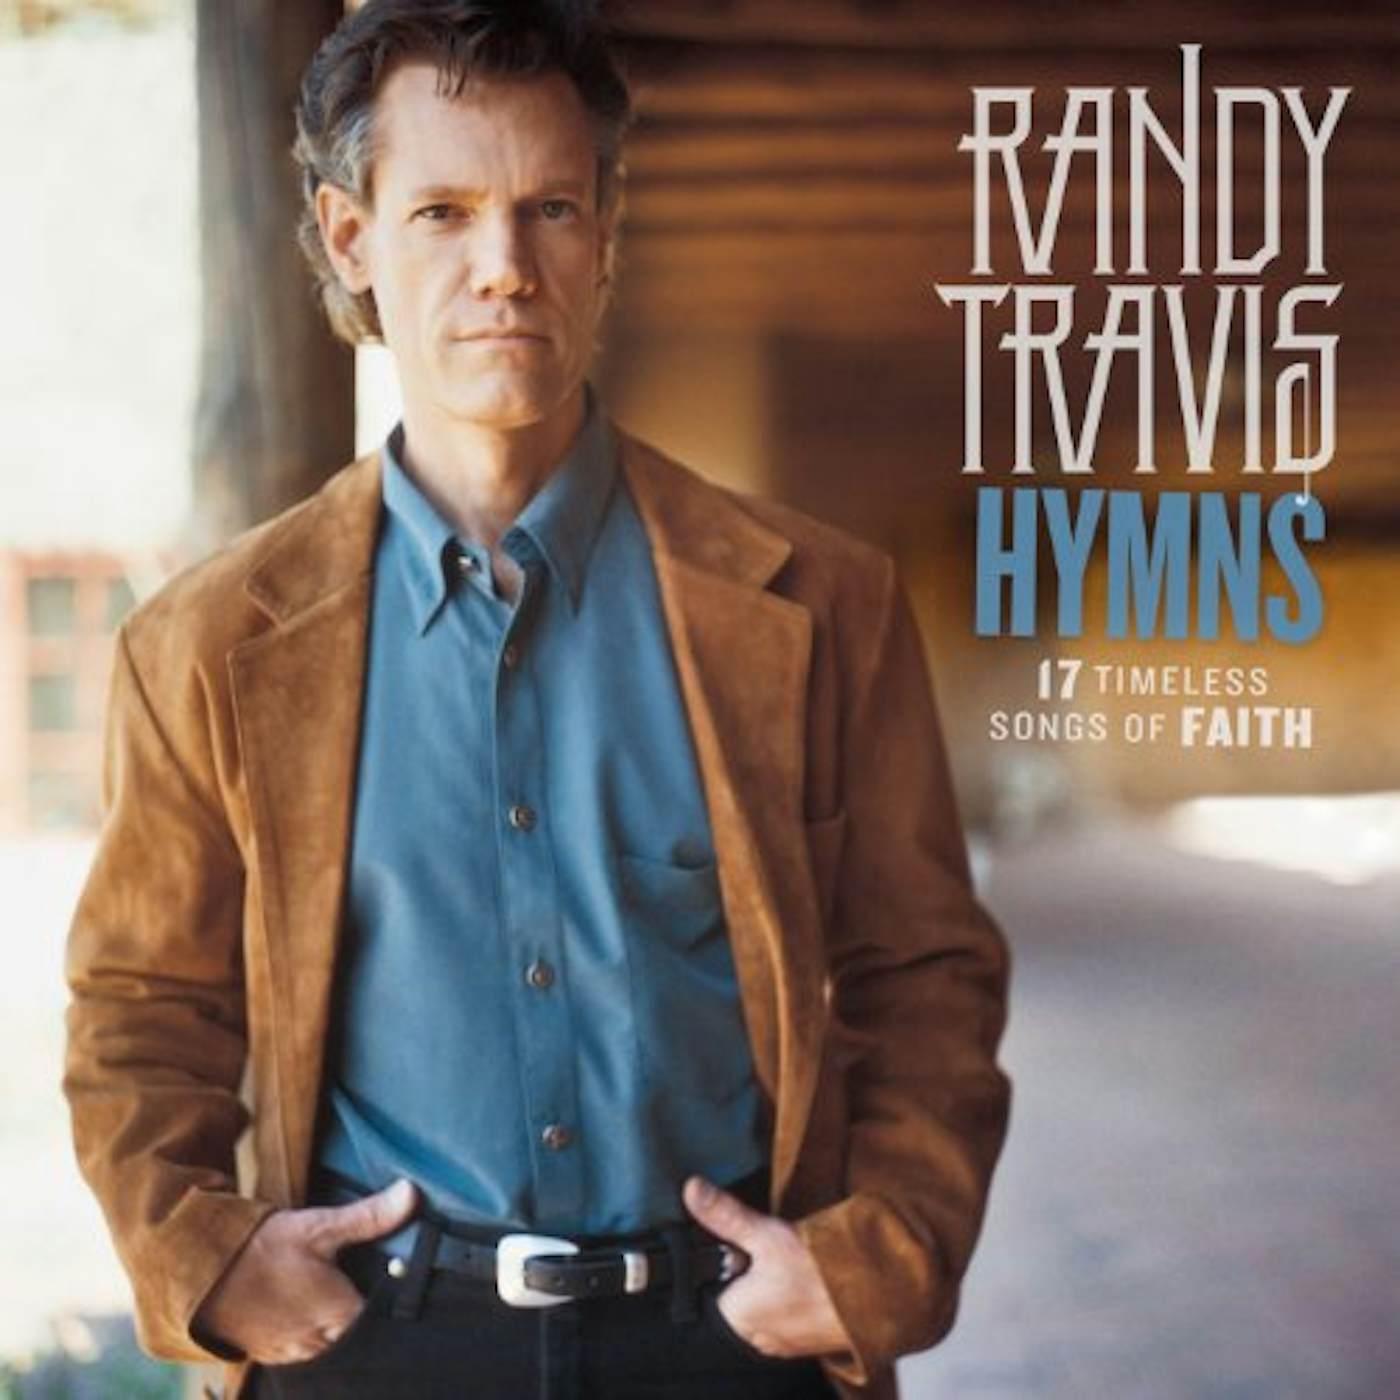 Randy Travis HYMNS: 17 TIMELESS SONGS OF FAITH CD